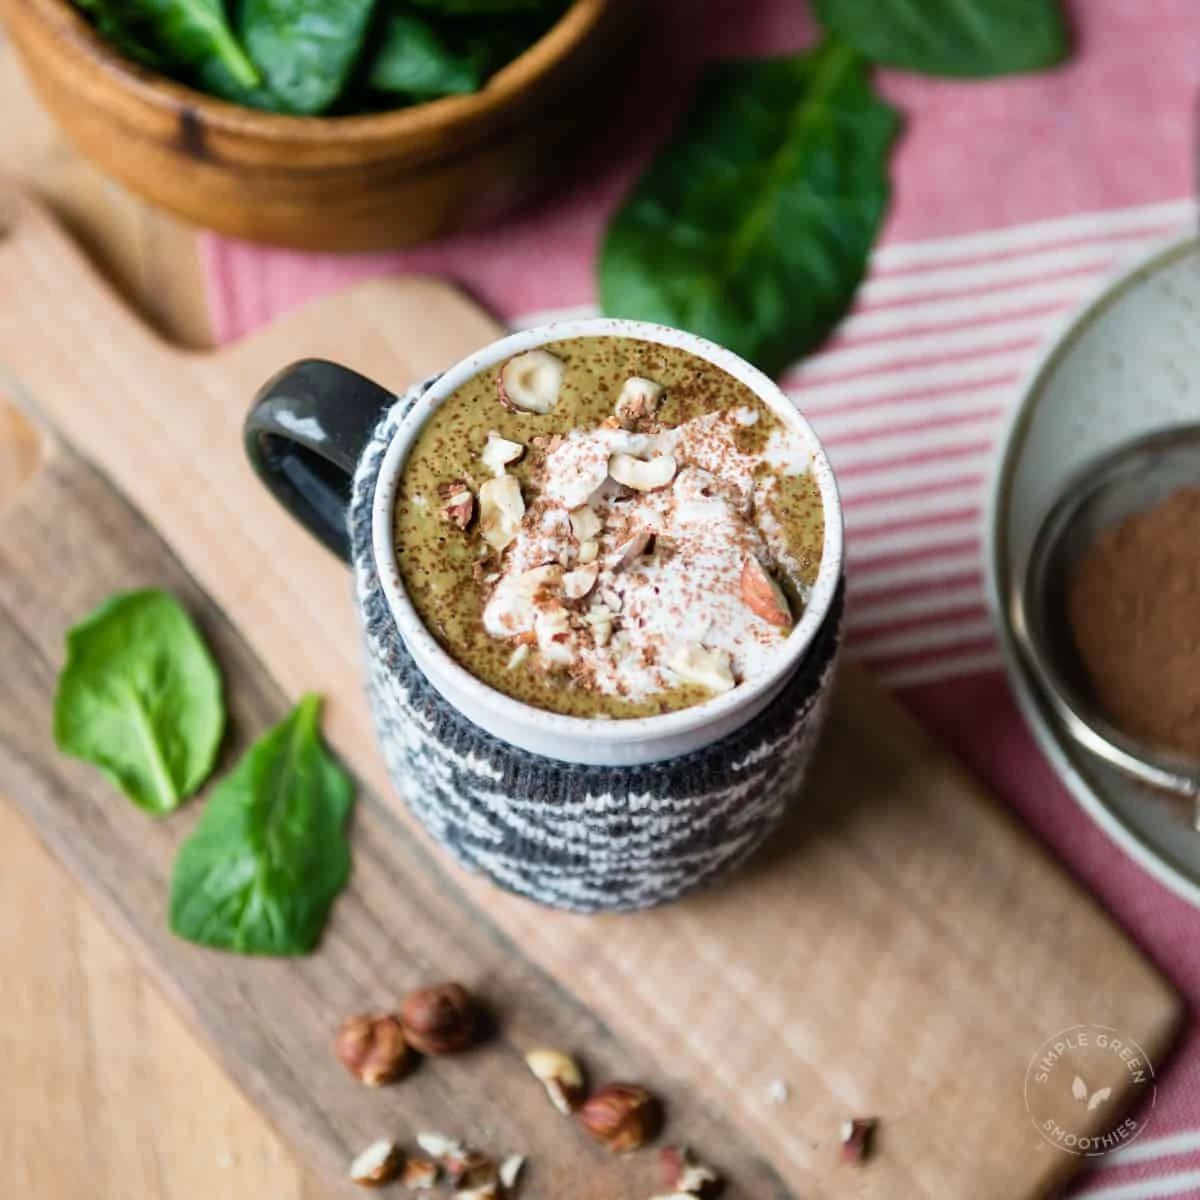 chocolate hazelnut shake with spinach